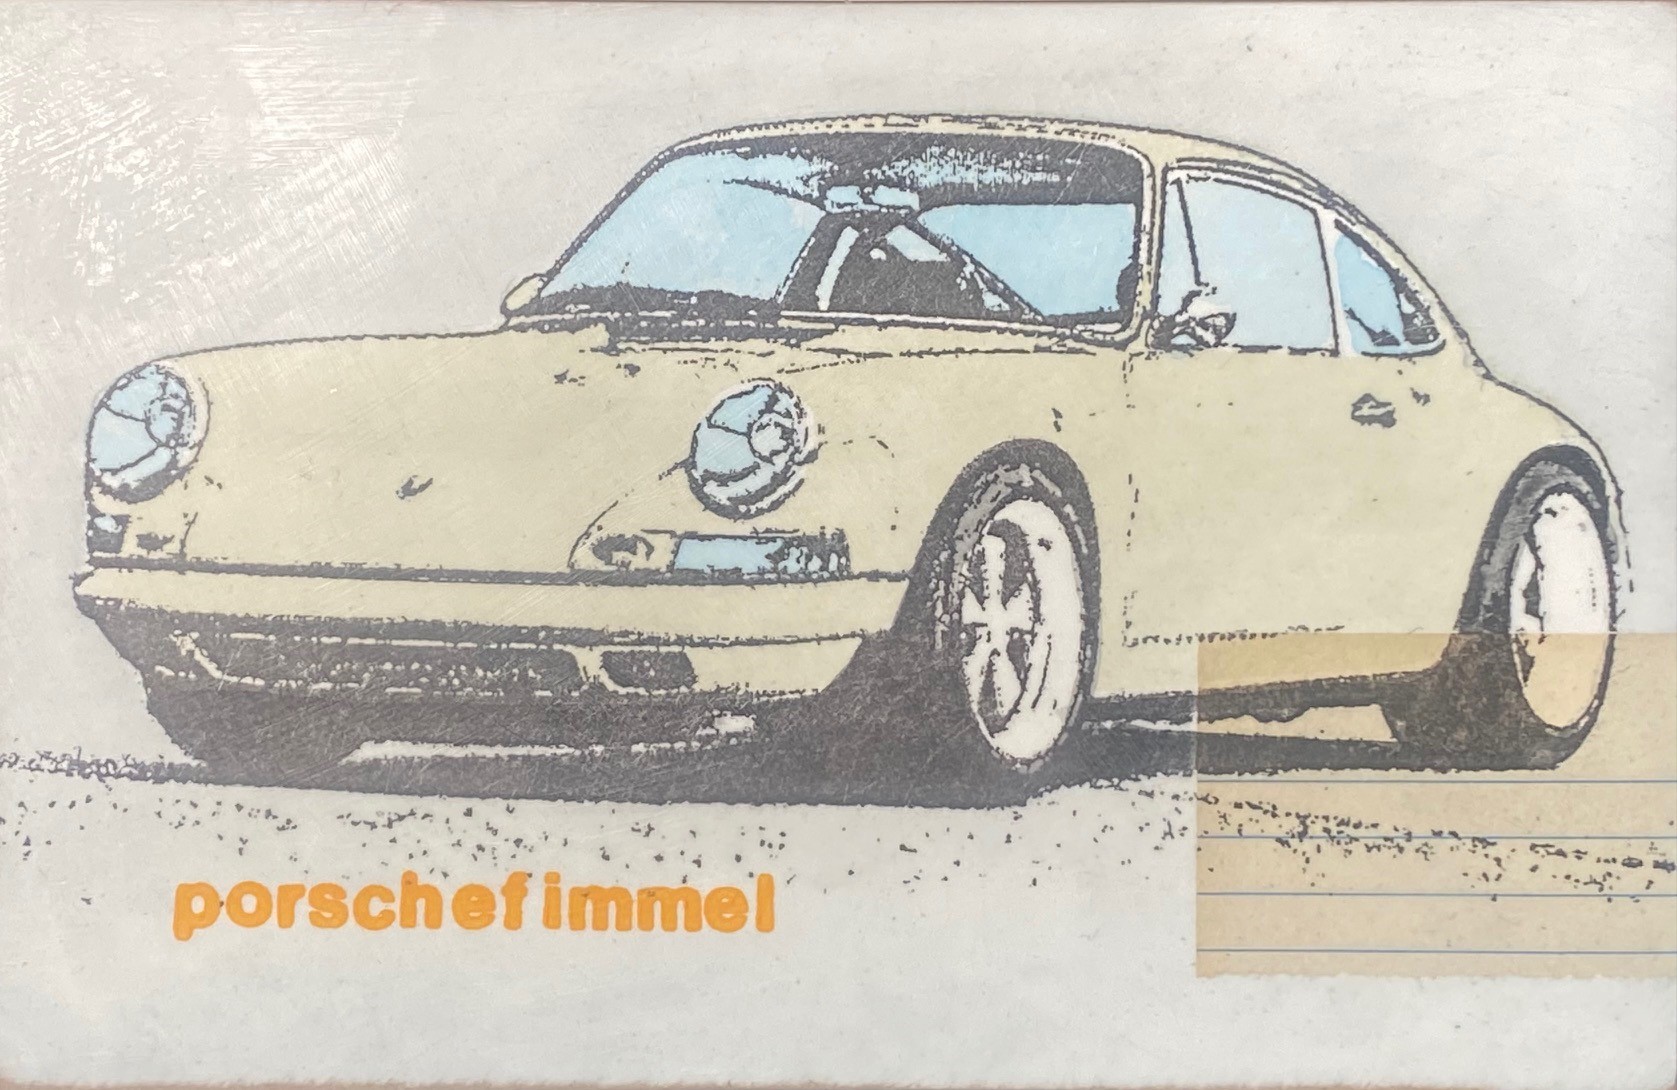 Porschefimmel Creme